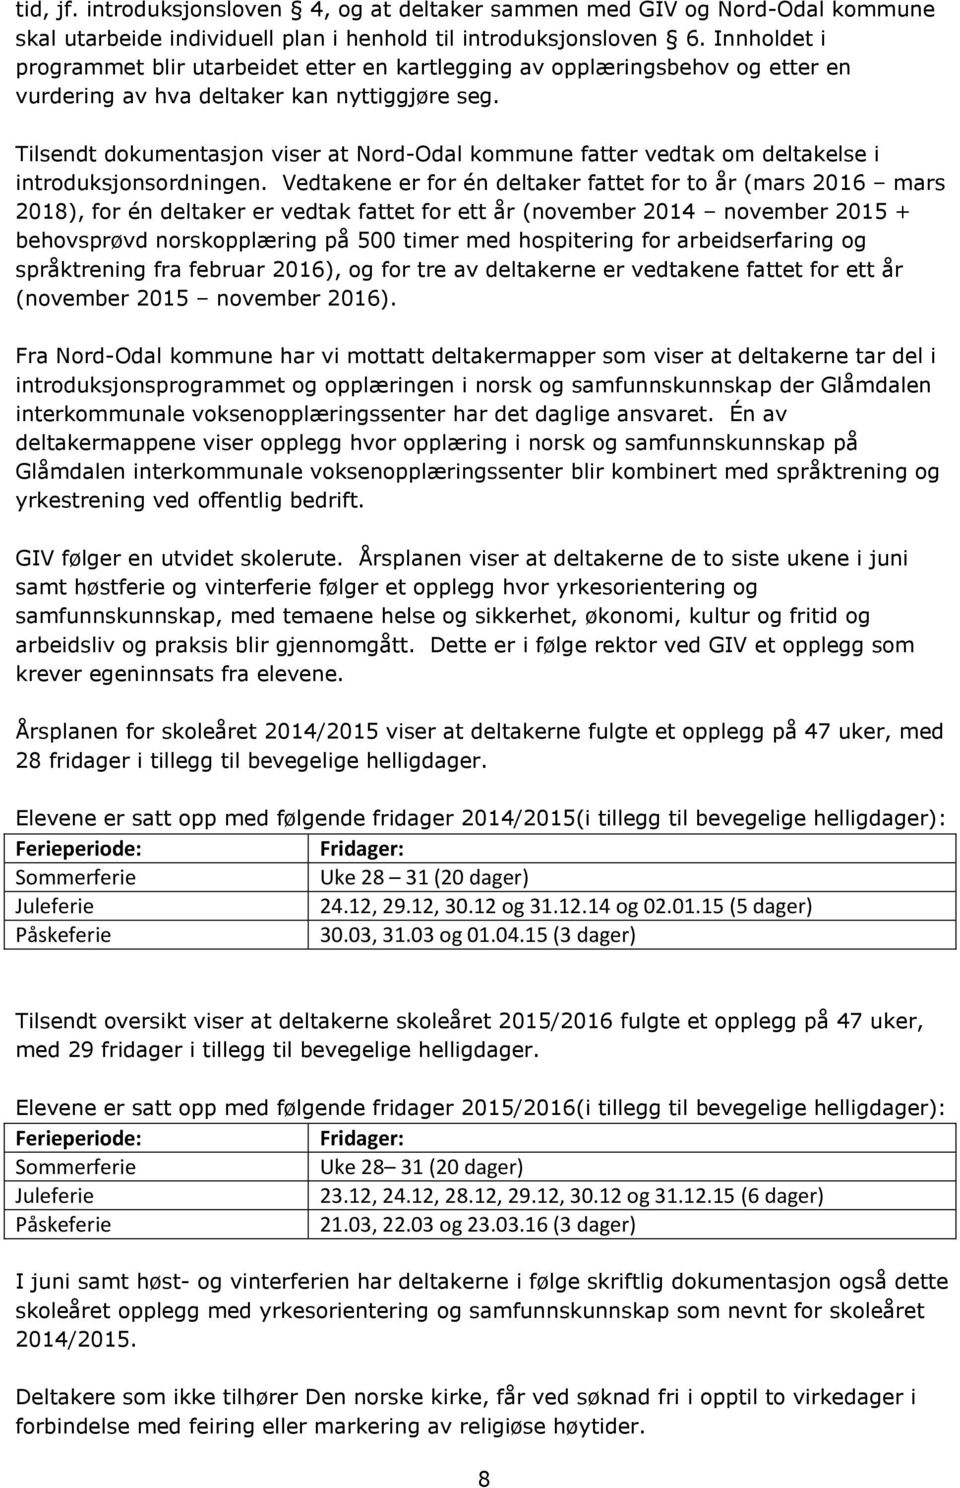 Tilsendt dokumentasjon viser at Nord-Odal kommune fatter vedtak om deltakelse i introduksjonsordningen.